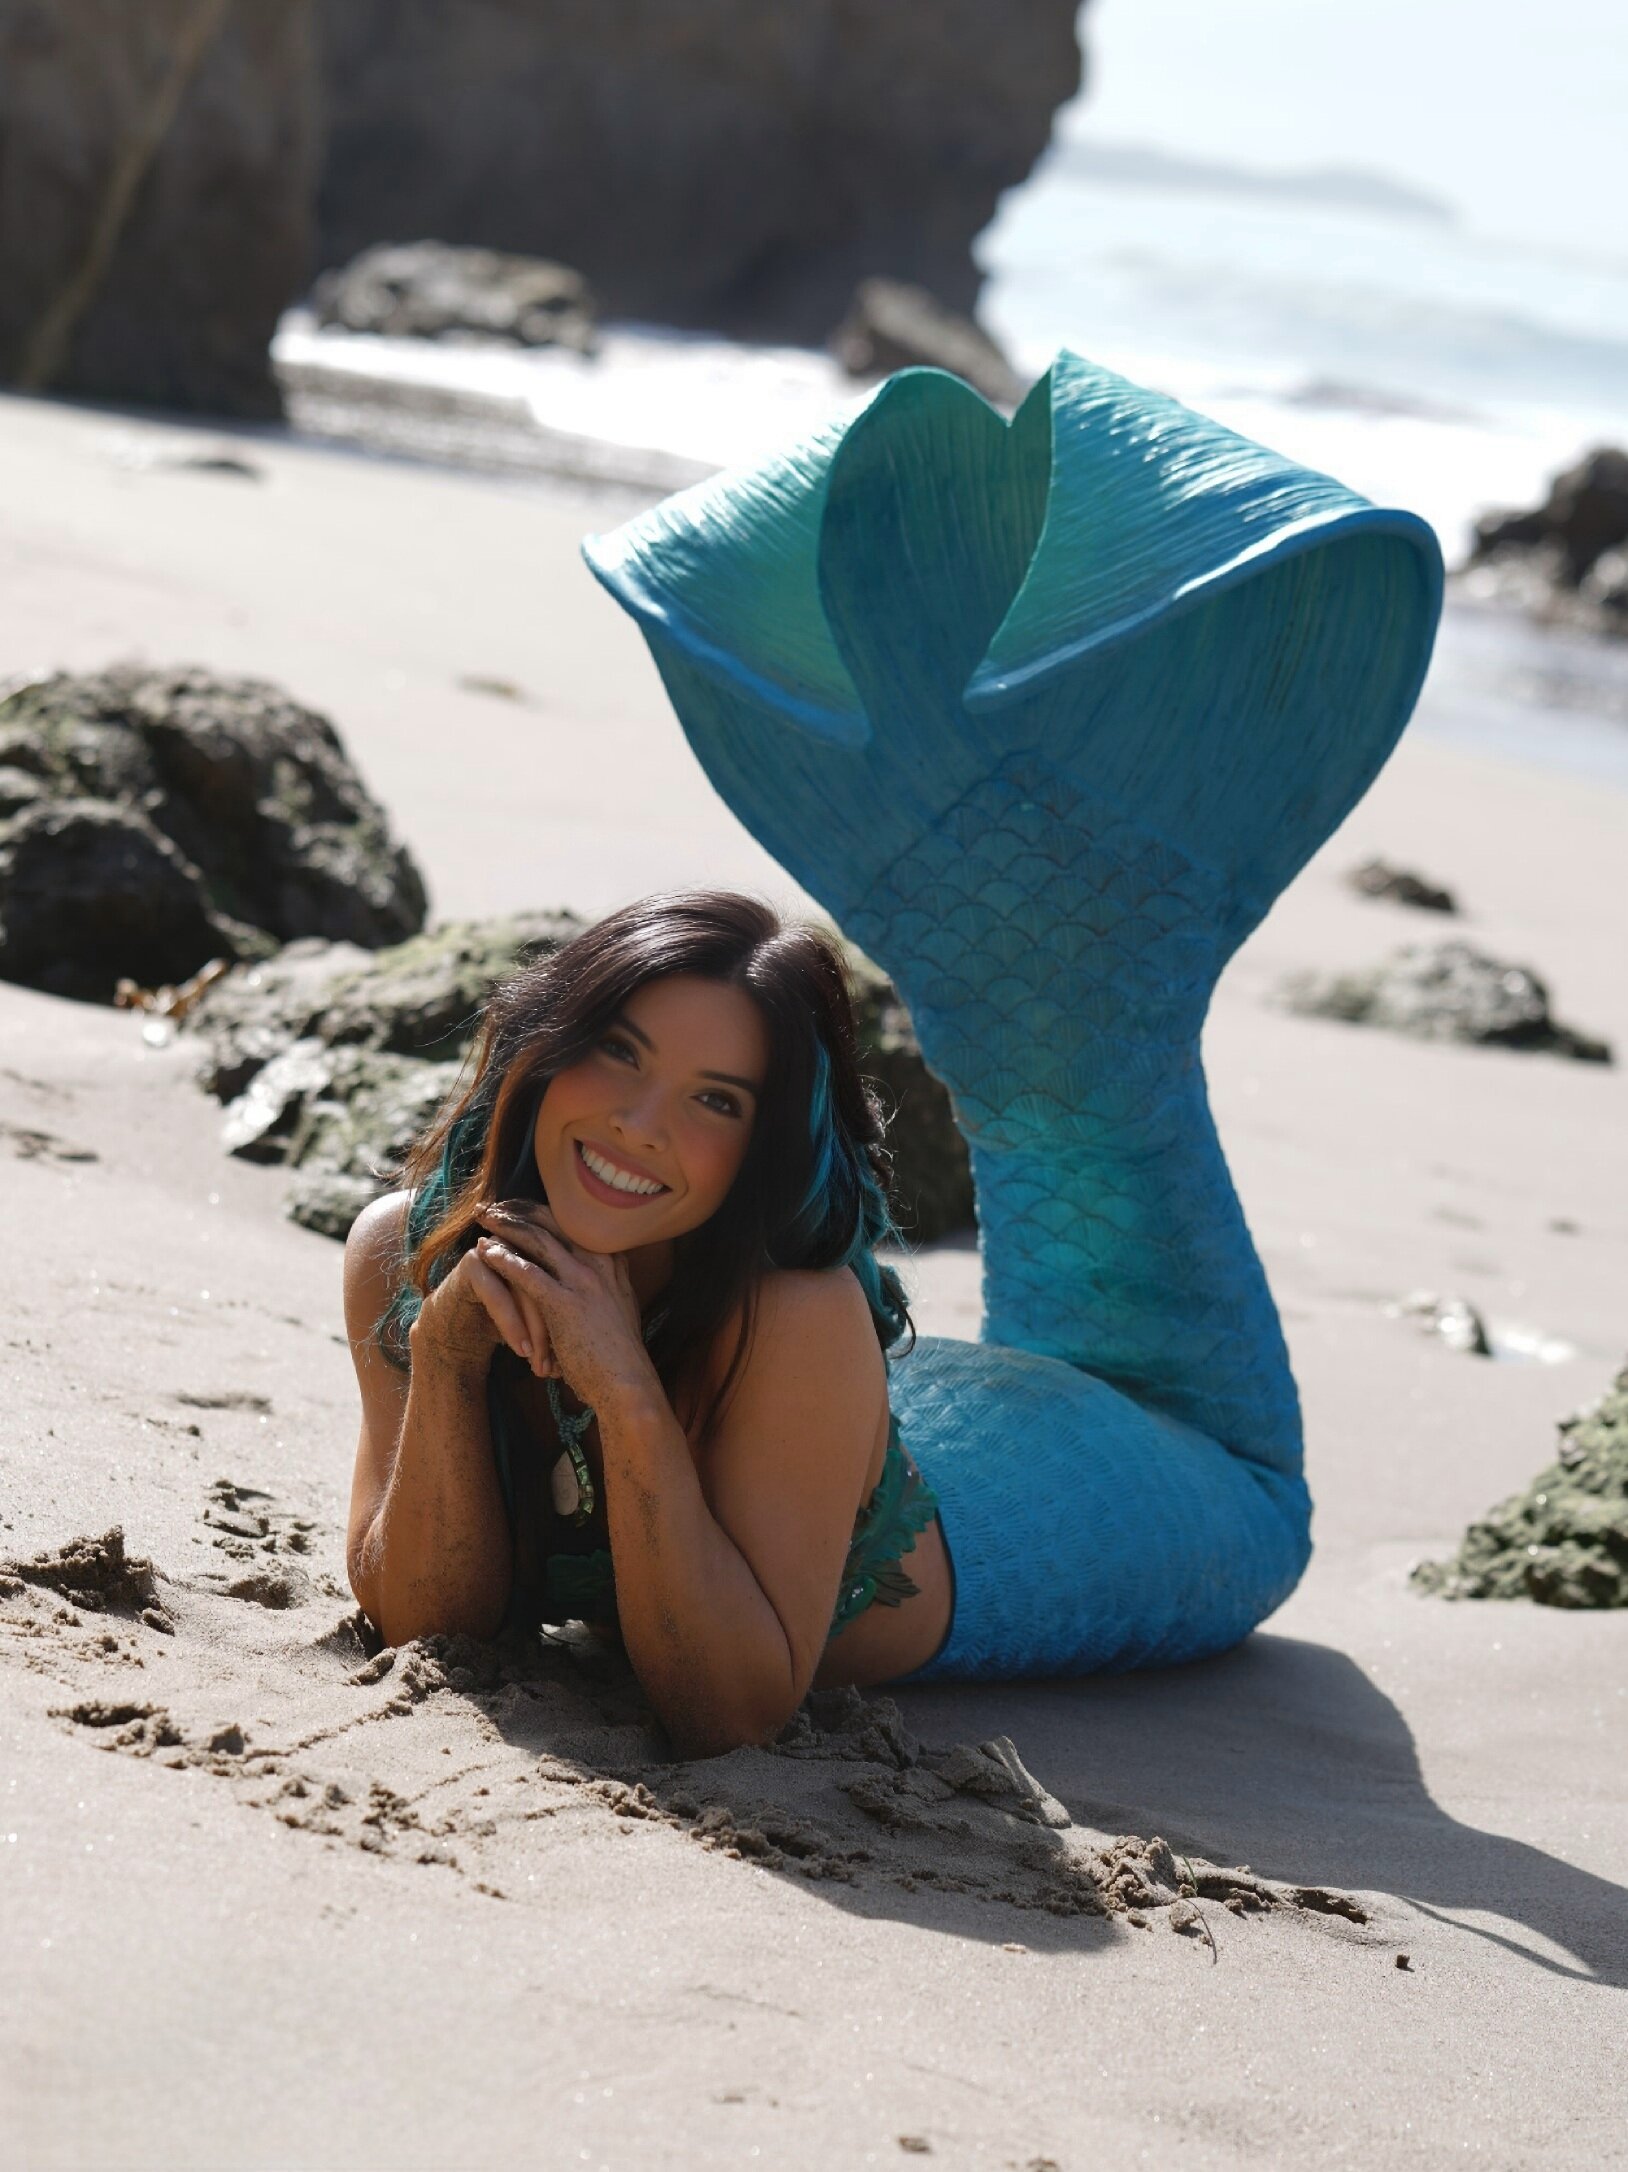 Los Angeles Latina Mermaid on Beach 2.jpg